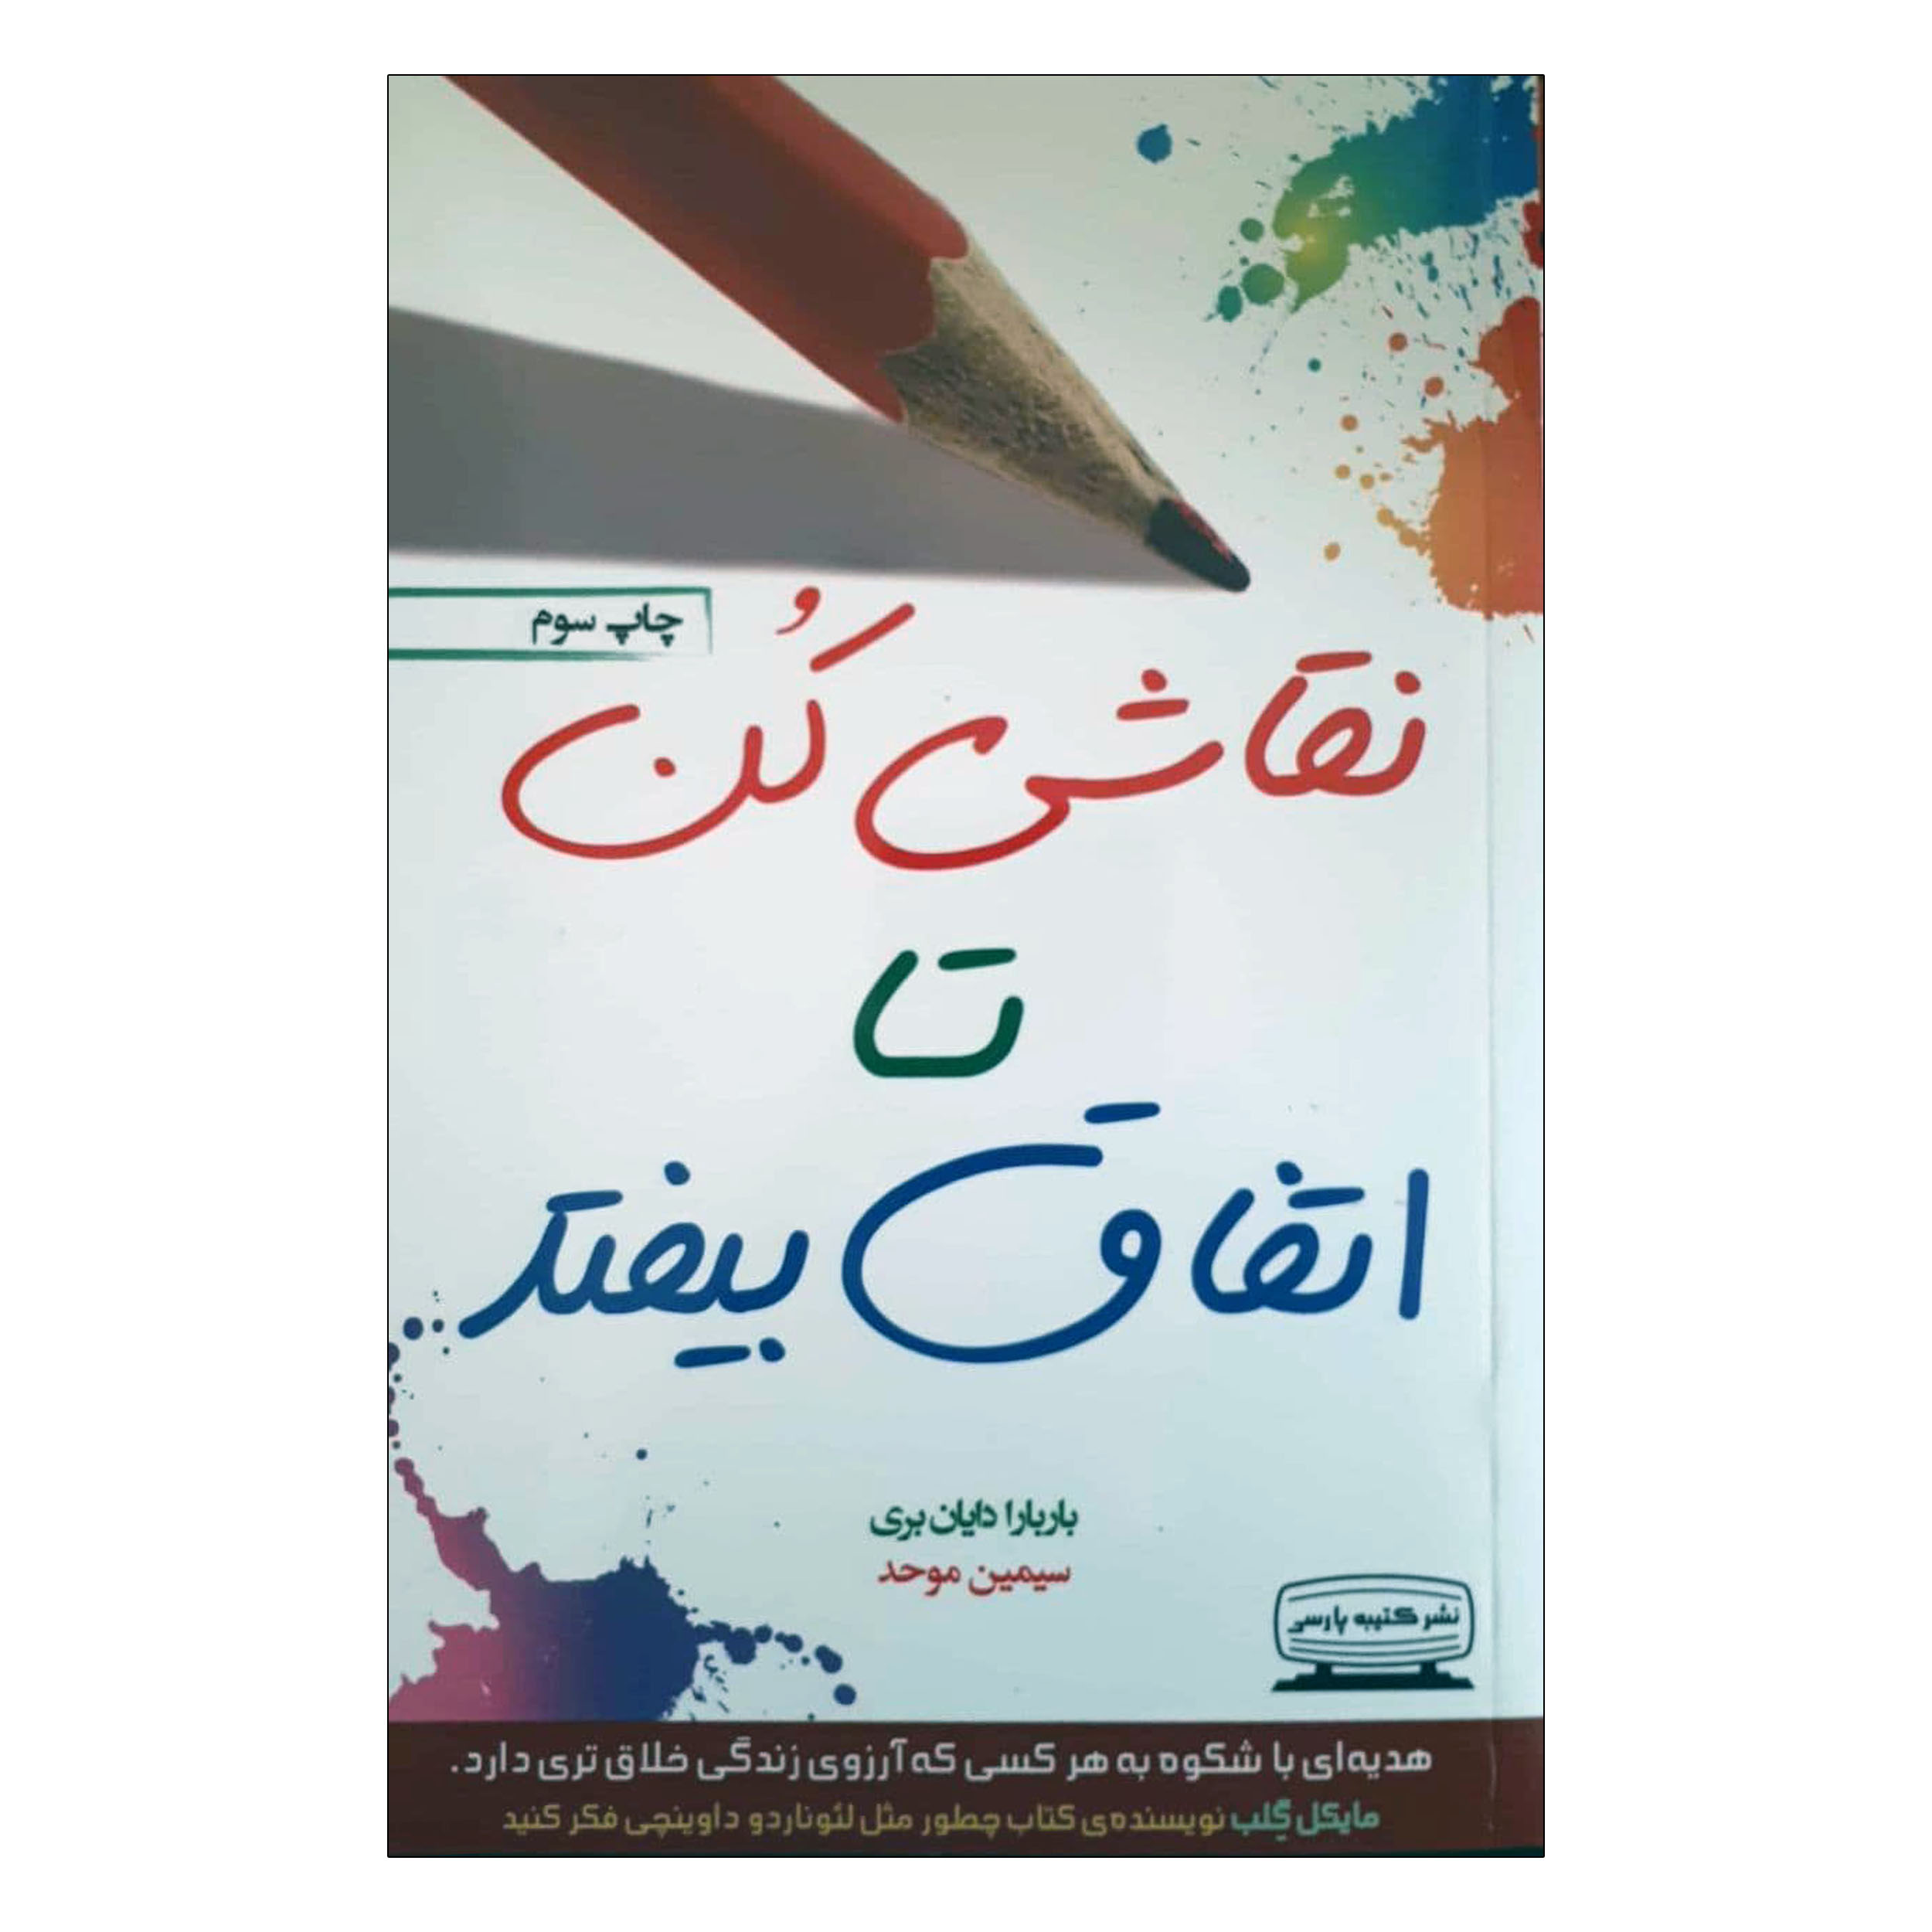 کتاب نقاشی کن تا اتفاق بیفتد اثر باربارا دایان بری انتشارات کتیبه پارسی